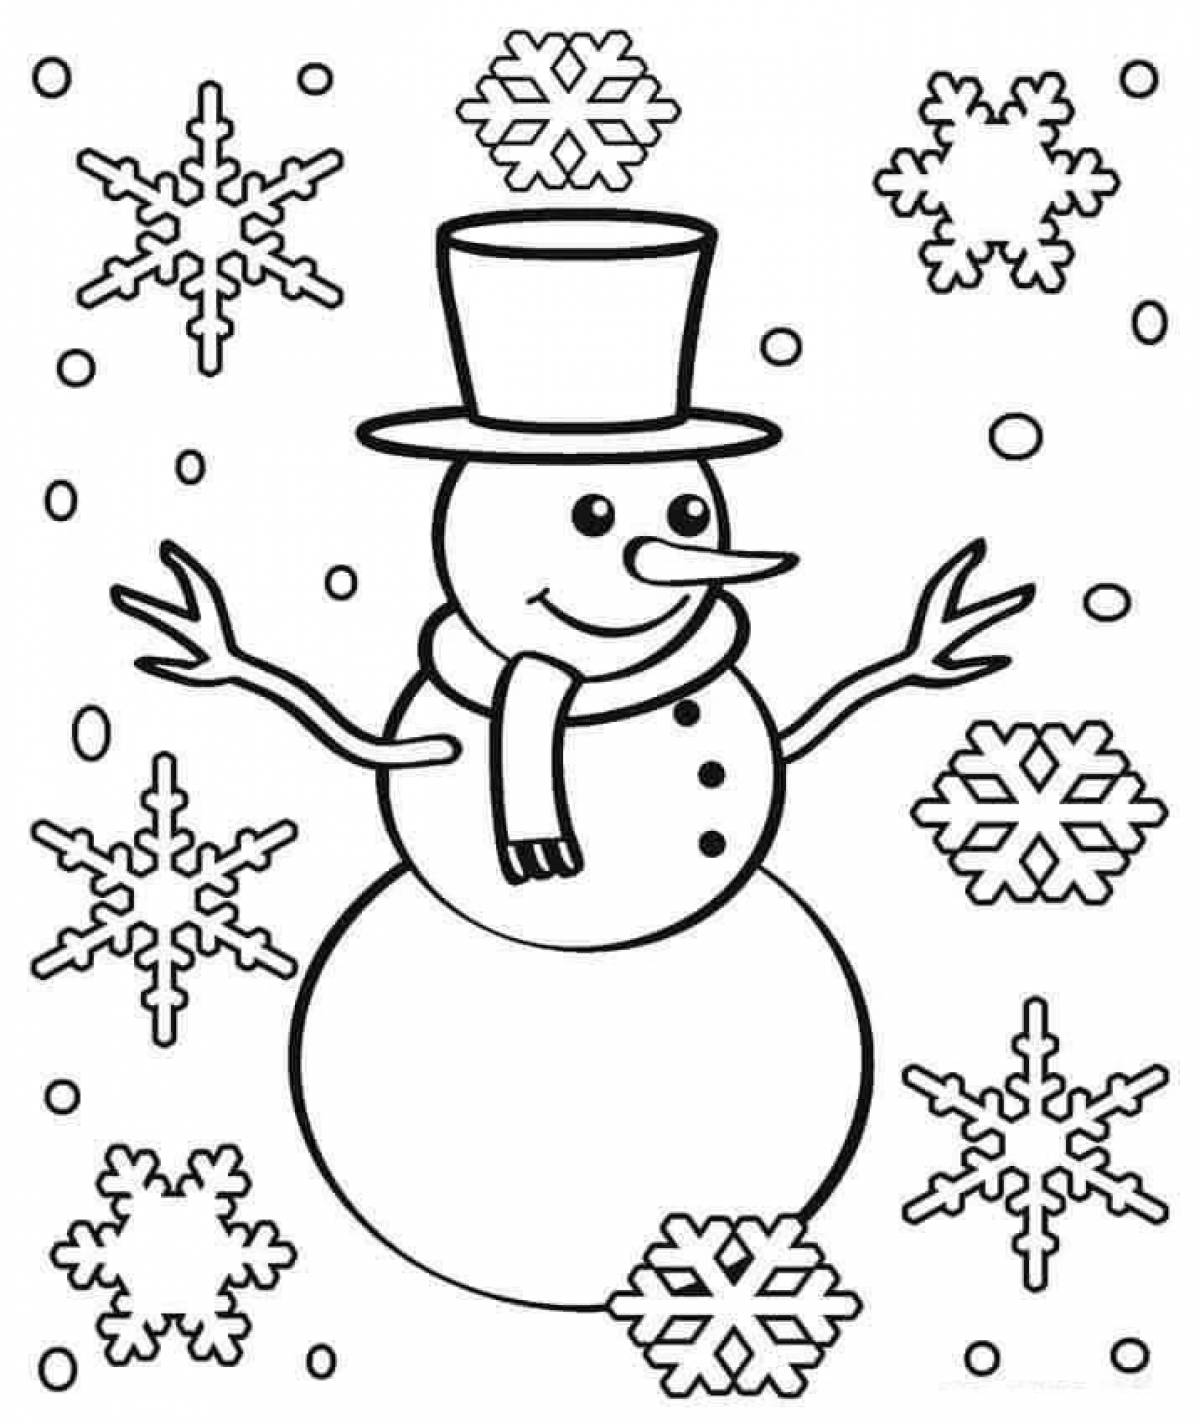 Live coloring snowman